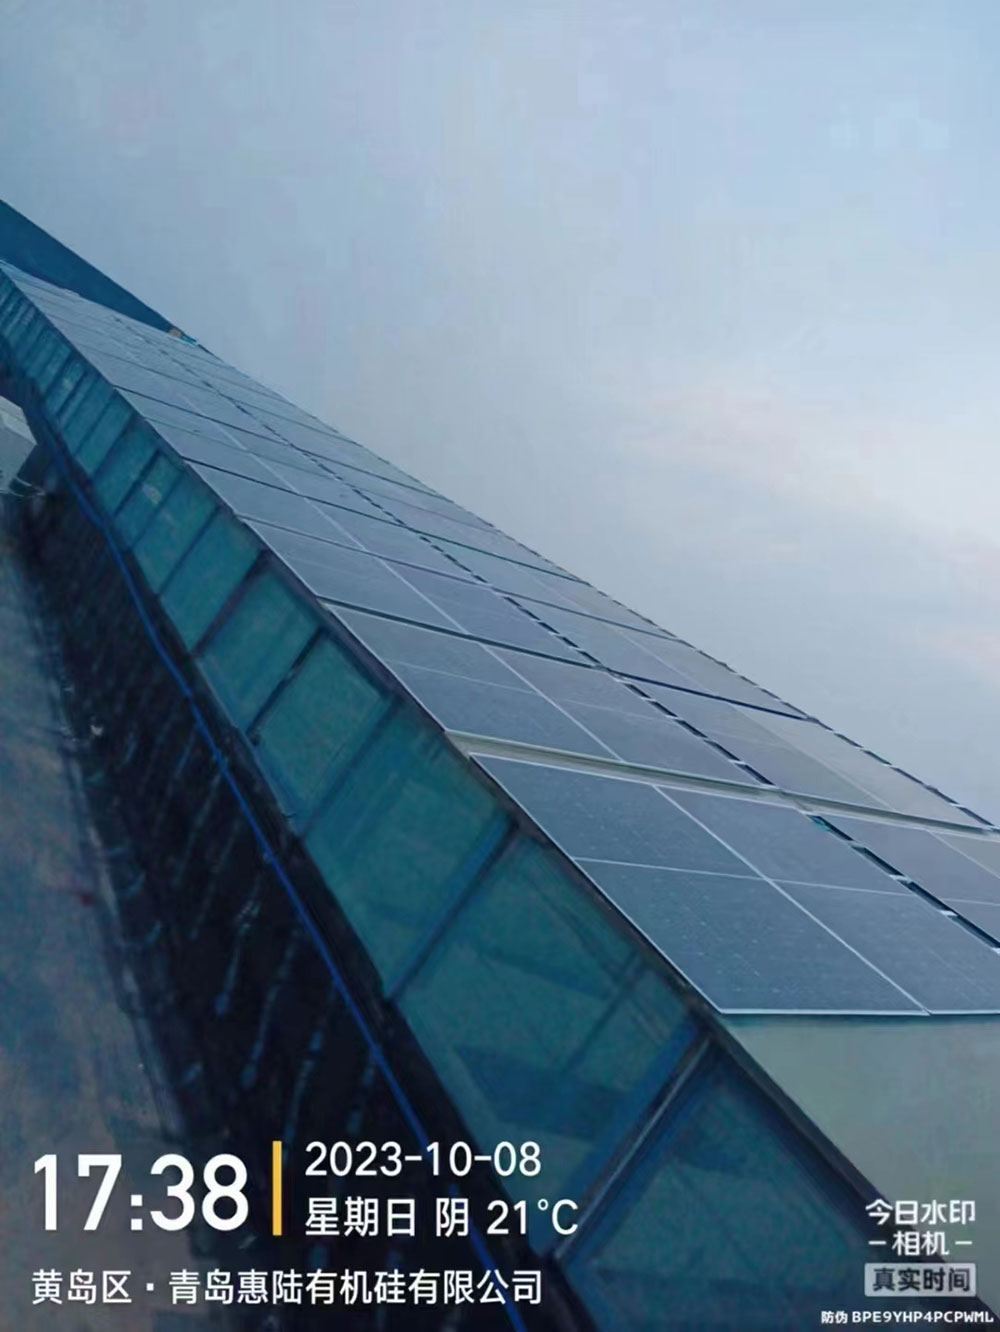 祝贺青岛惠陆有机硅有限公司800KW电站项目顺利并网！ 马鞍山晶盛能源 